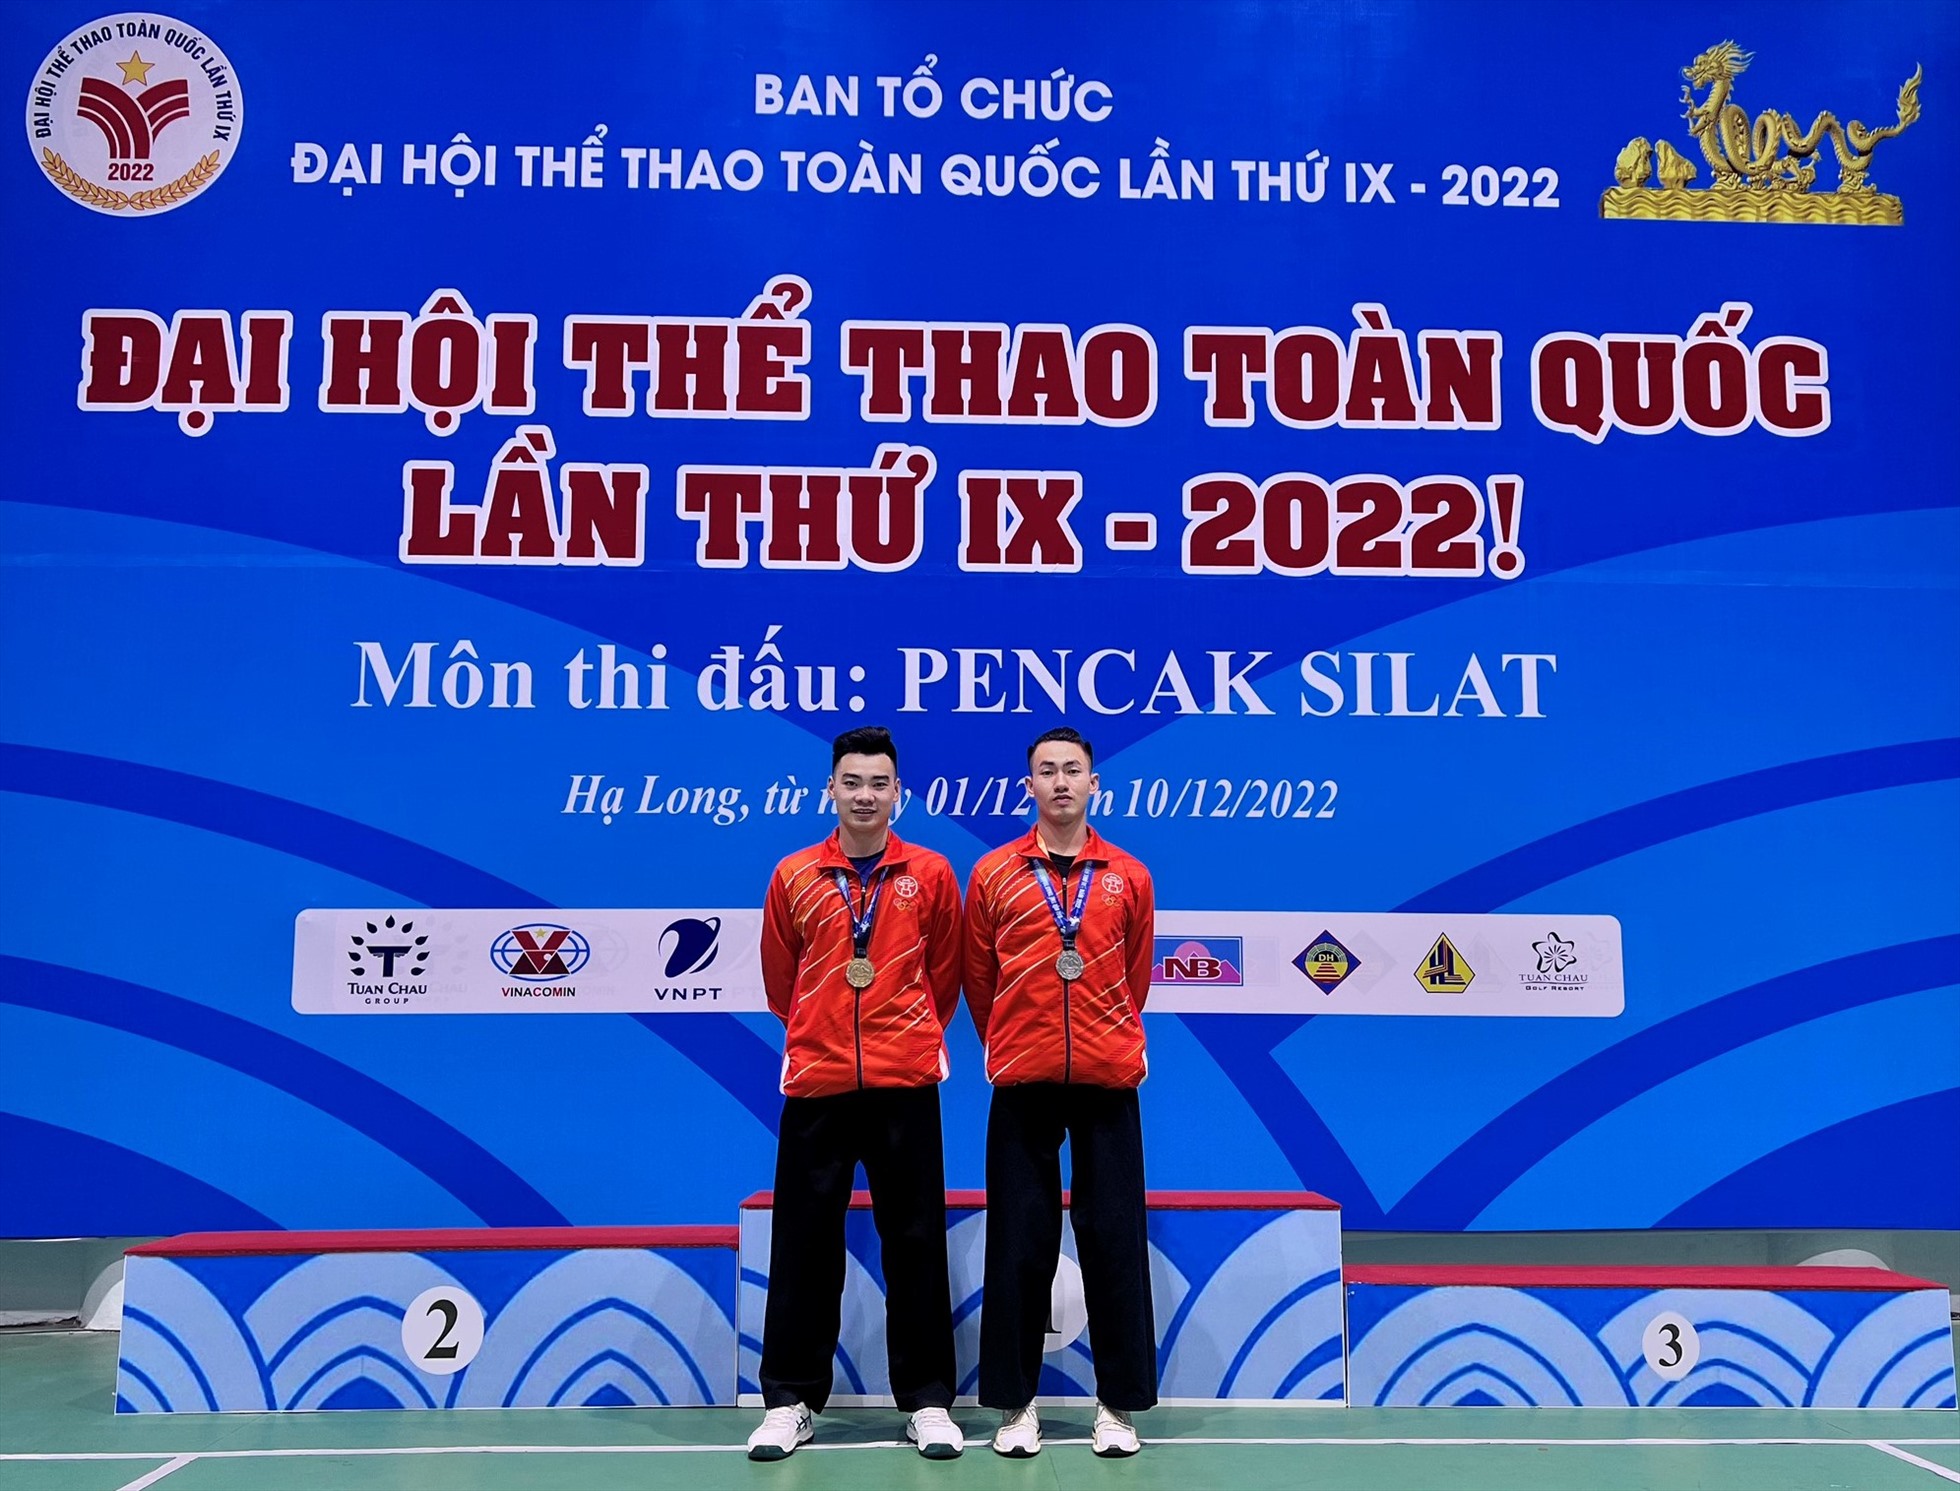 Hồng Quân (trái) là vận động viên Pencak Silat hàng đầu Việt Nam, với kinh nghiệm thi đấu ở nhiều giải đấu trong nước và quốc tế. Ảnh: NVCC